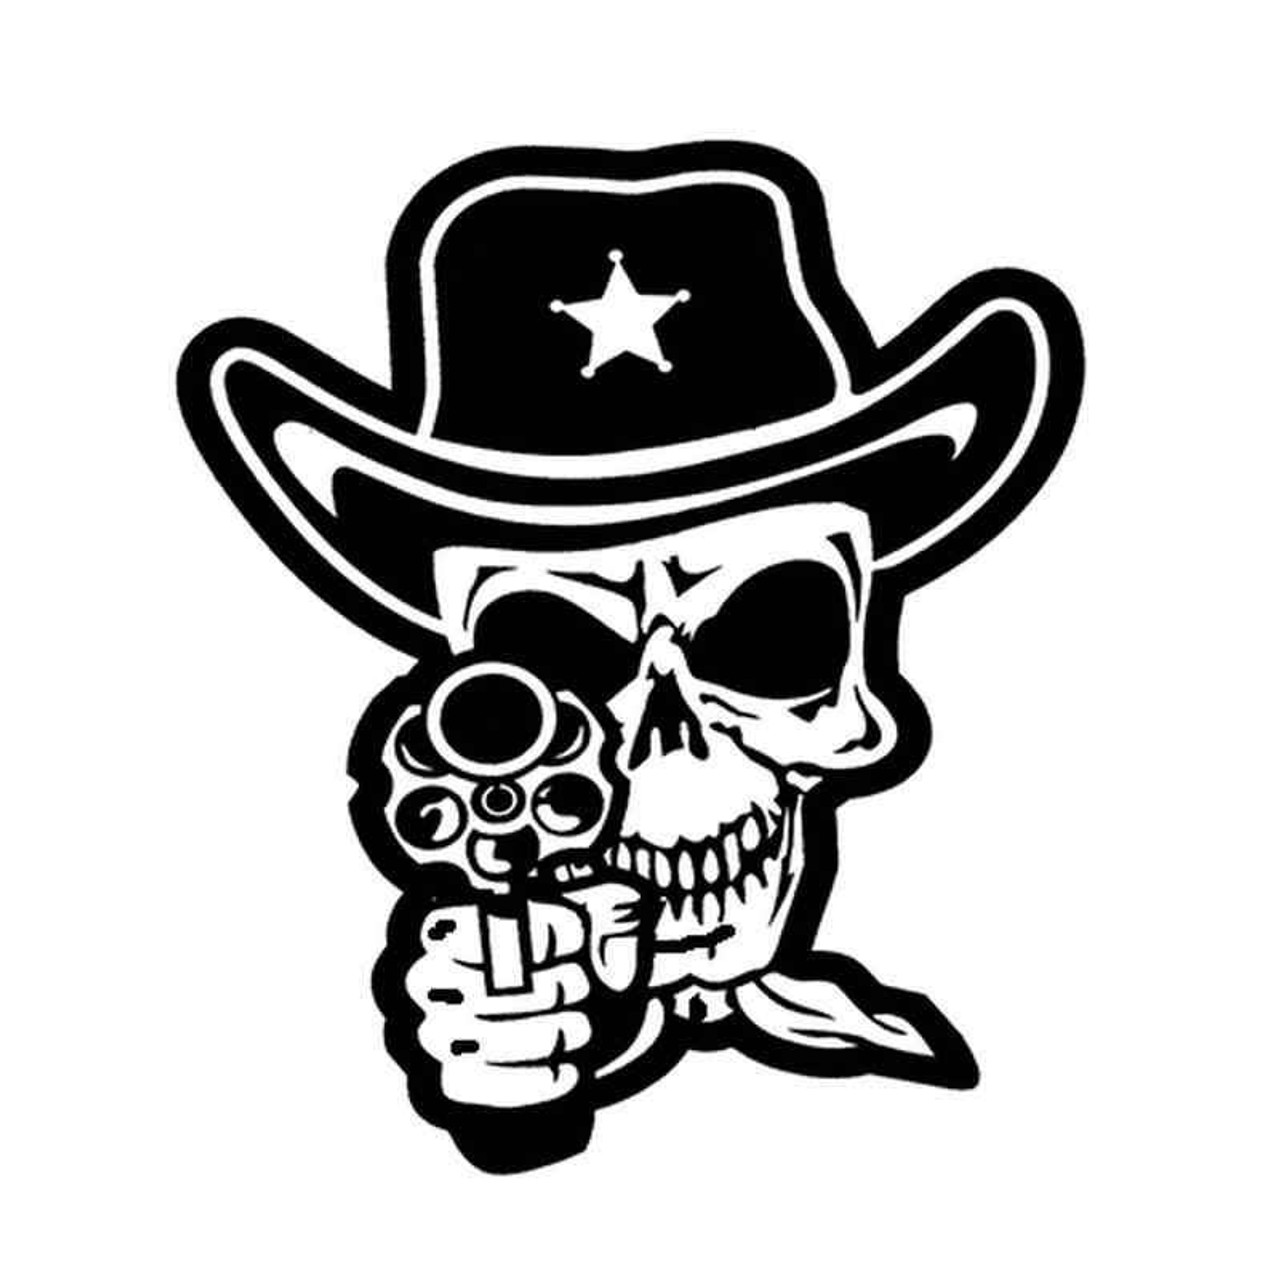 Cowboy Skull decal sticker die cut vinyl death Hat